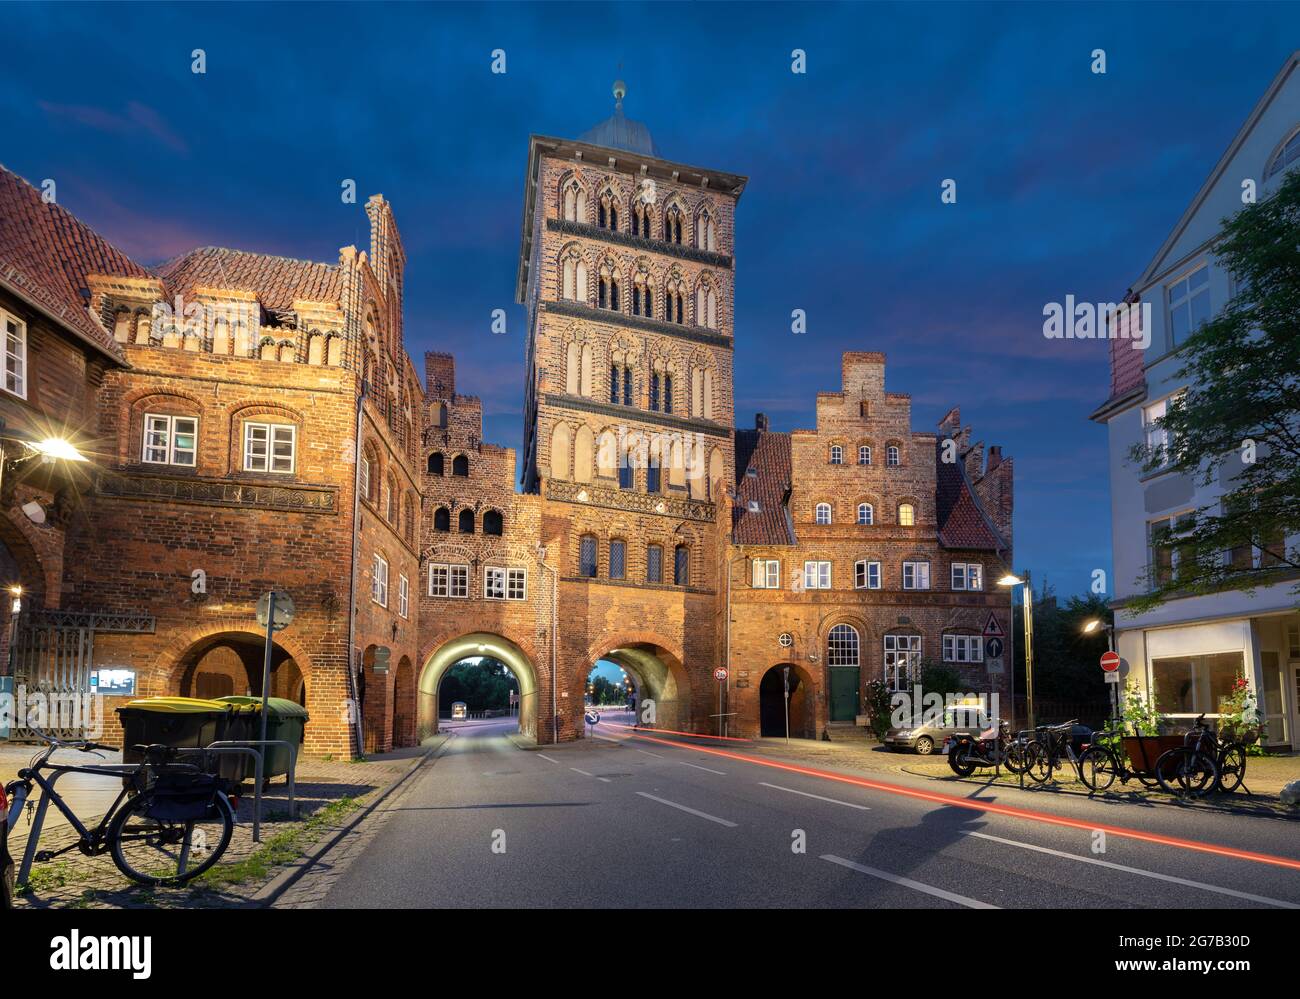 Lubeck, Germania. Immagine HDR di Burgtor - porta storica della città al tramonto Foto Stock